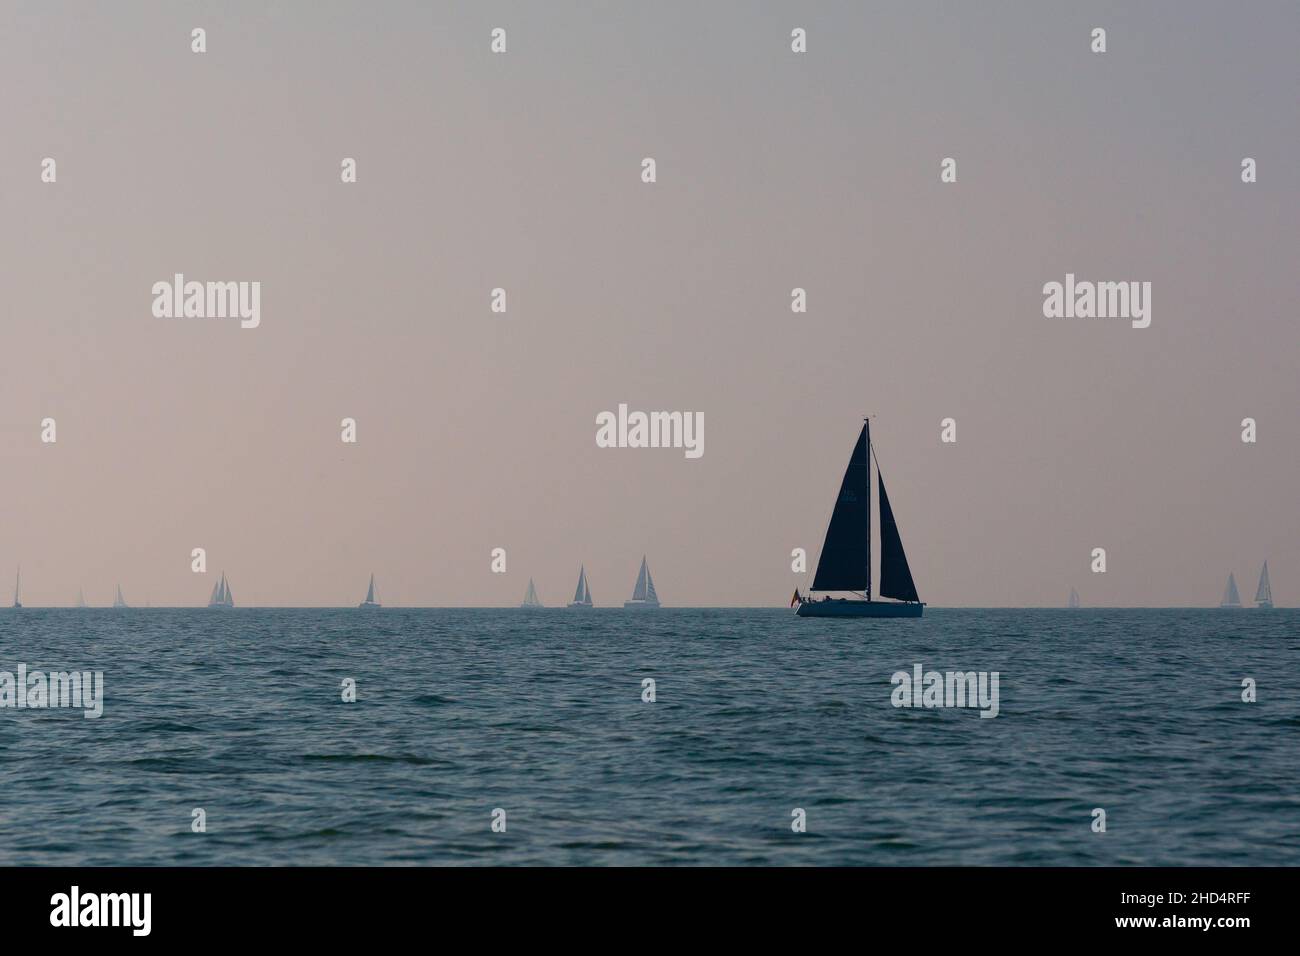 Vue panoramique d'un voilier nageant dans la mer sur le fond des navires et du ciel bleu Banque D'Images